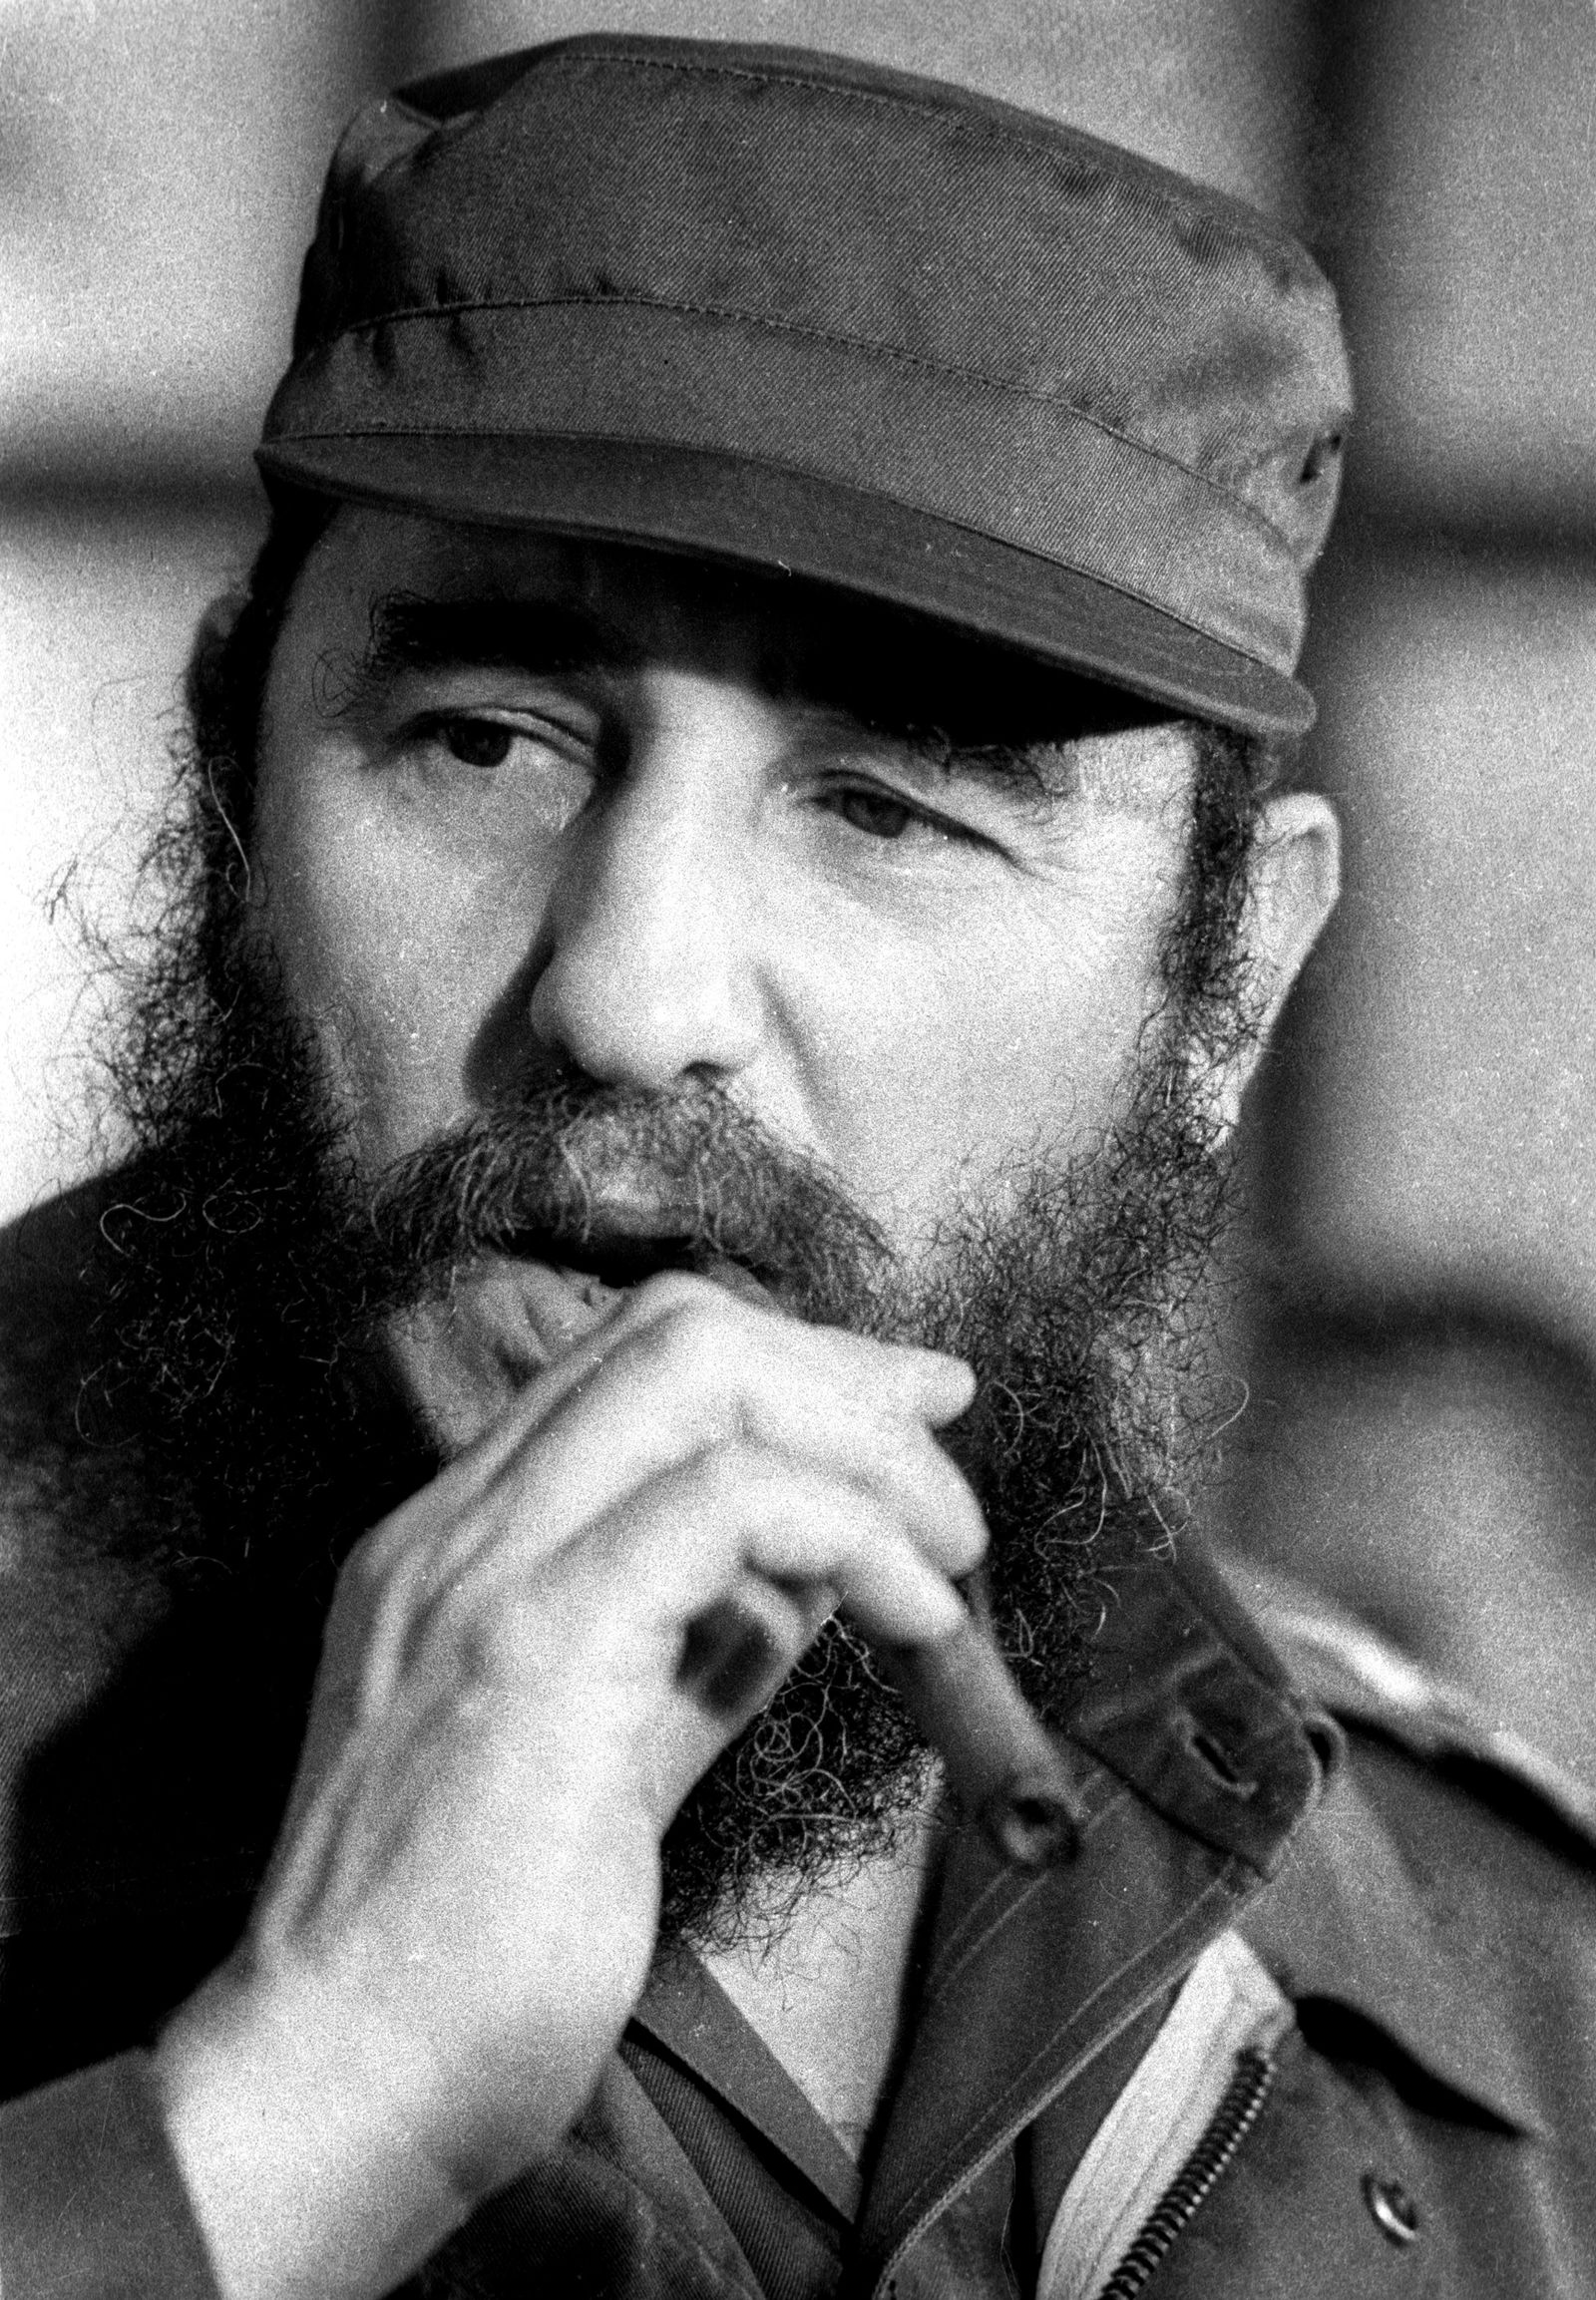 الزعيم الكوبي الراحل فيدل كاسترو يدخن سيجاراً خلال جلسة للجمعية الوطنية في هافانا - 2 ديسمبر 1976 - REUTERS